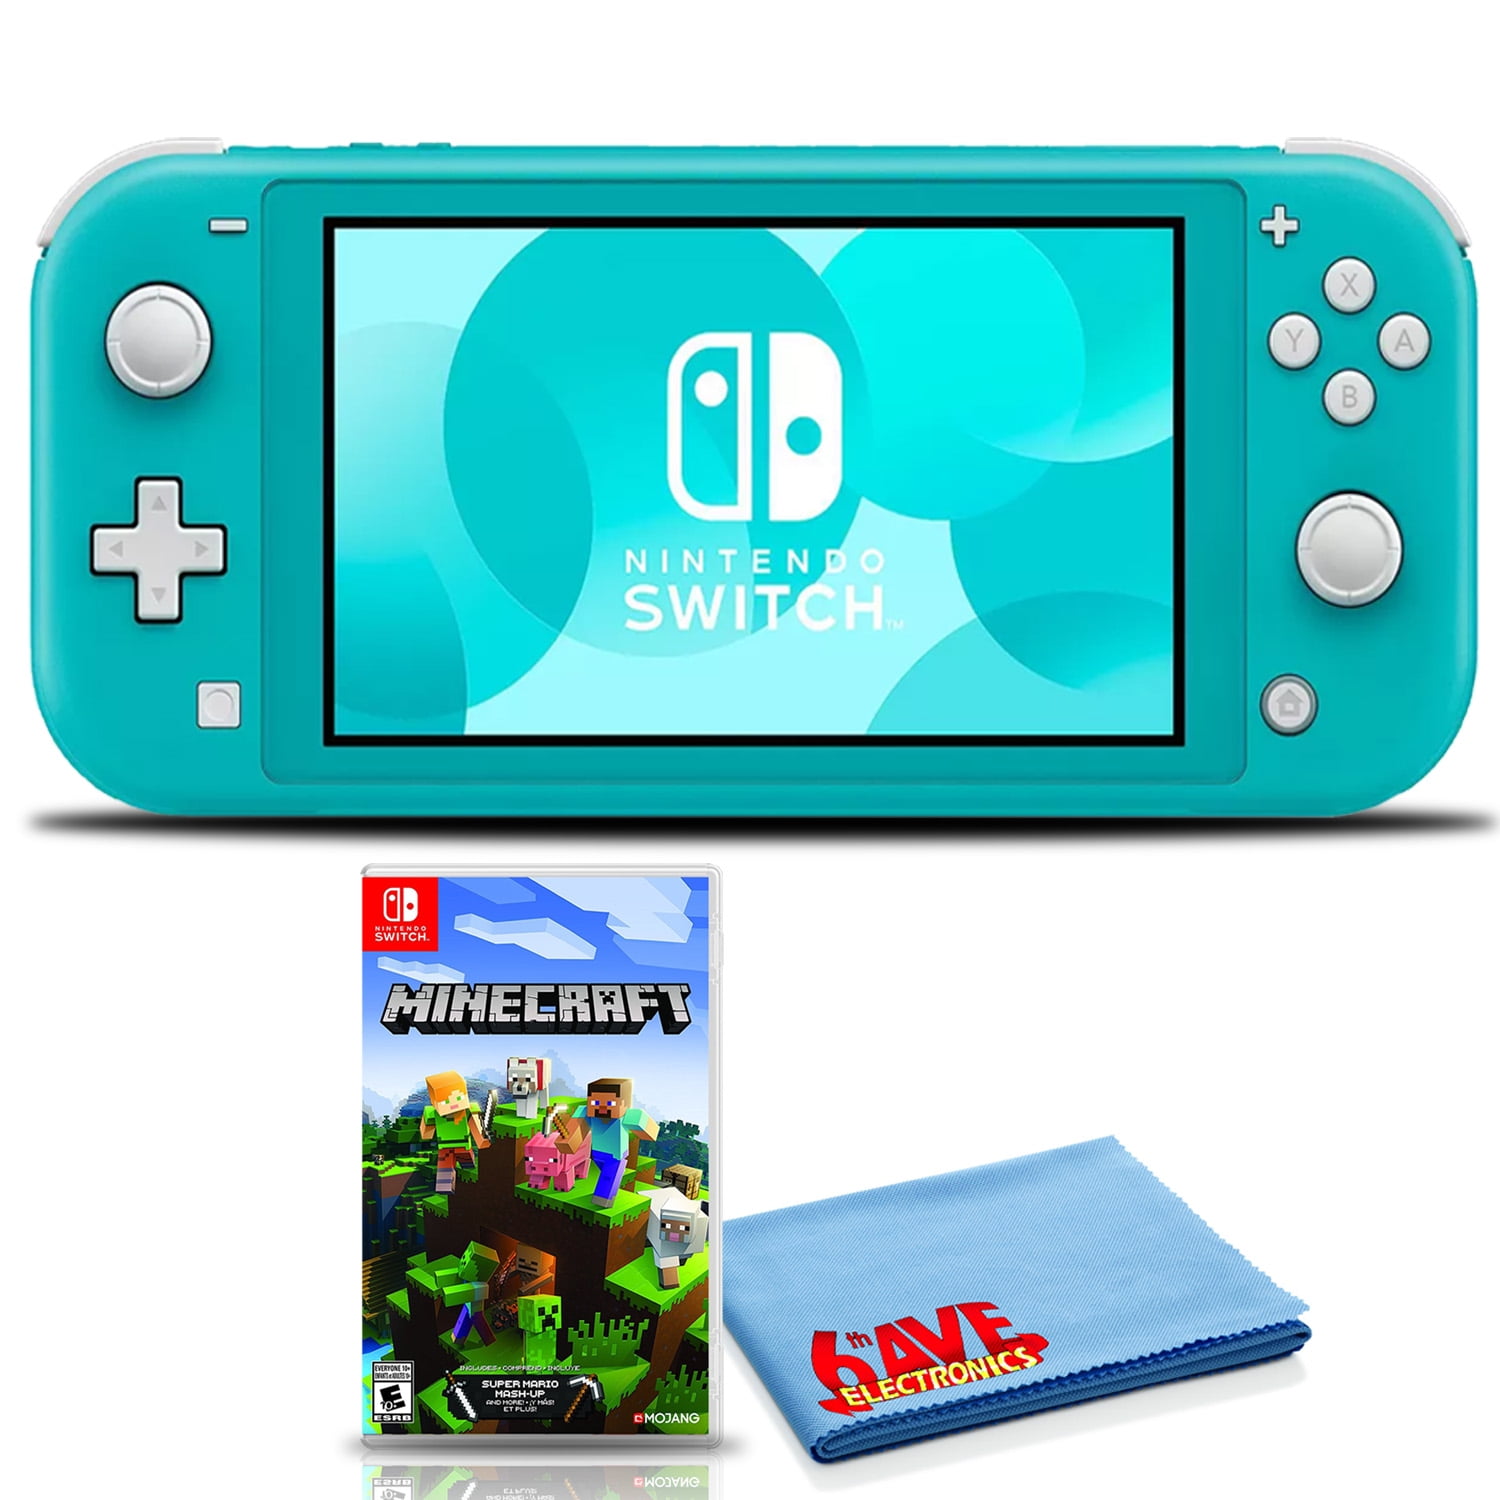 鍔 slogan Aftensmad Nintendo Switch Lite (Turquoise) Bundle with Minecraft and 6Ave Cleaning  Cloth - Walmart.com